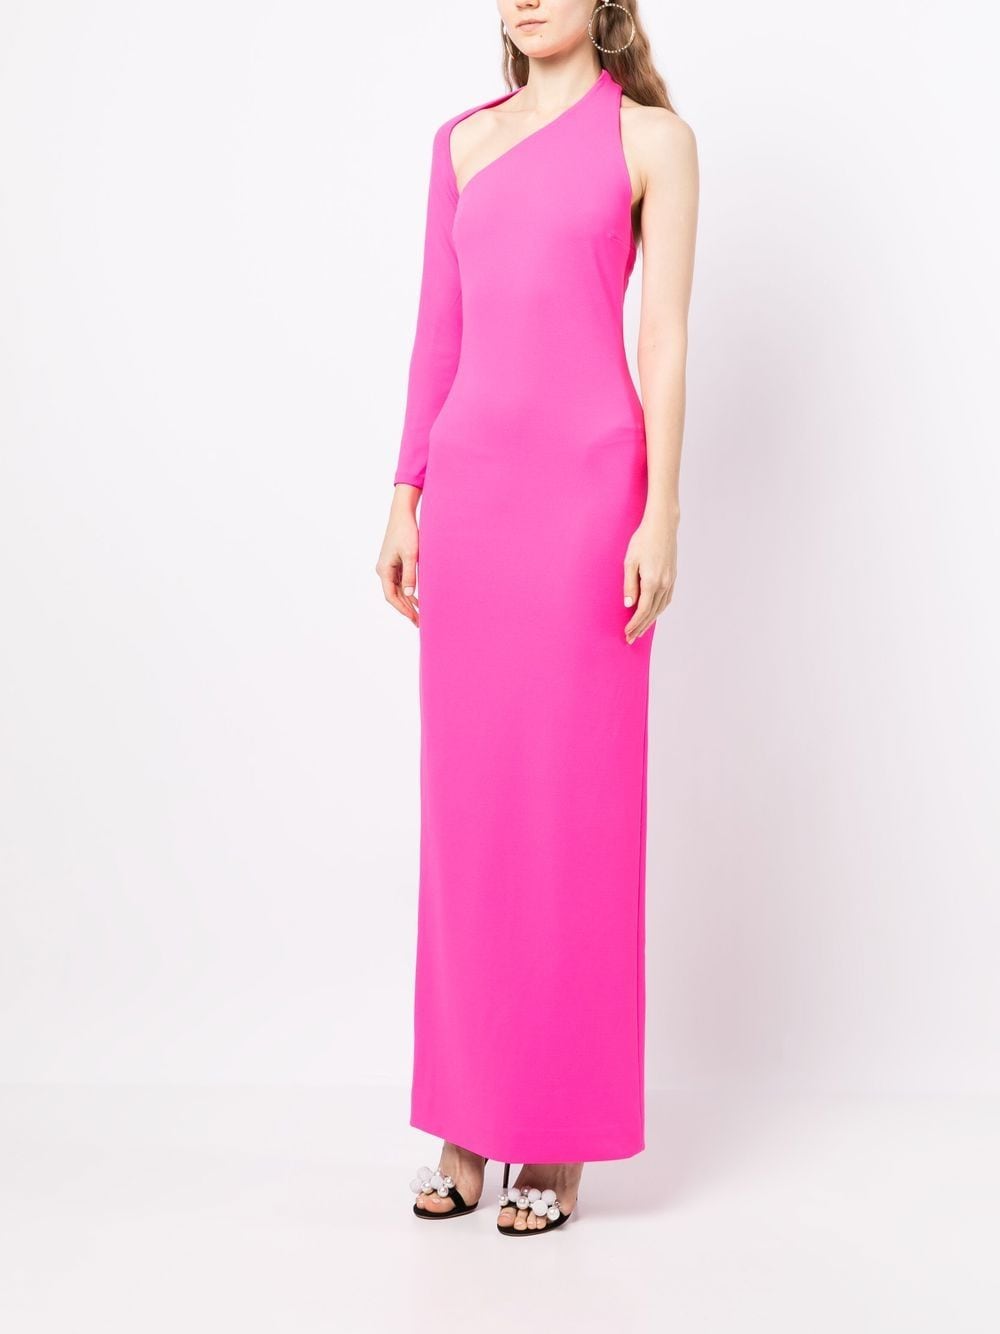 Solace London Saren Maxi Dress In Pink | ModeSens